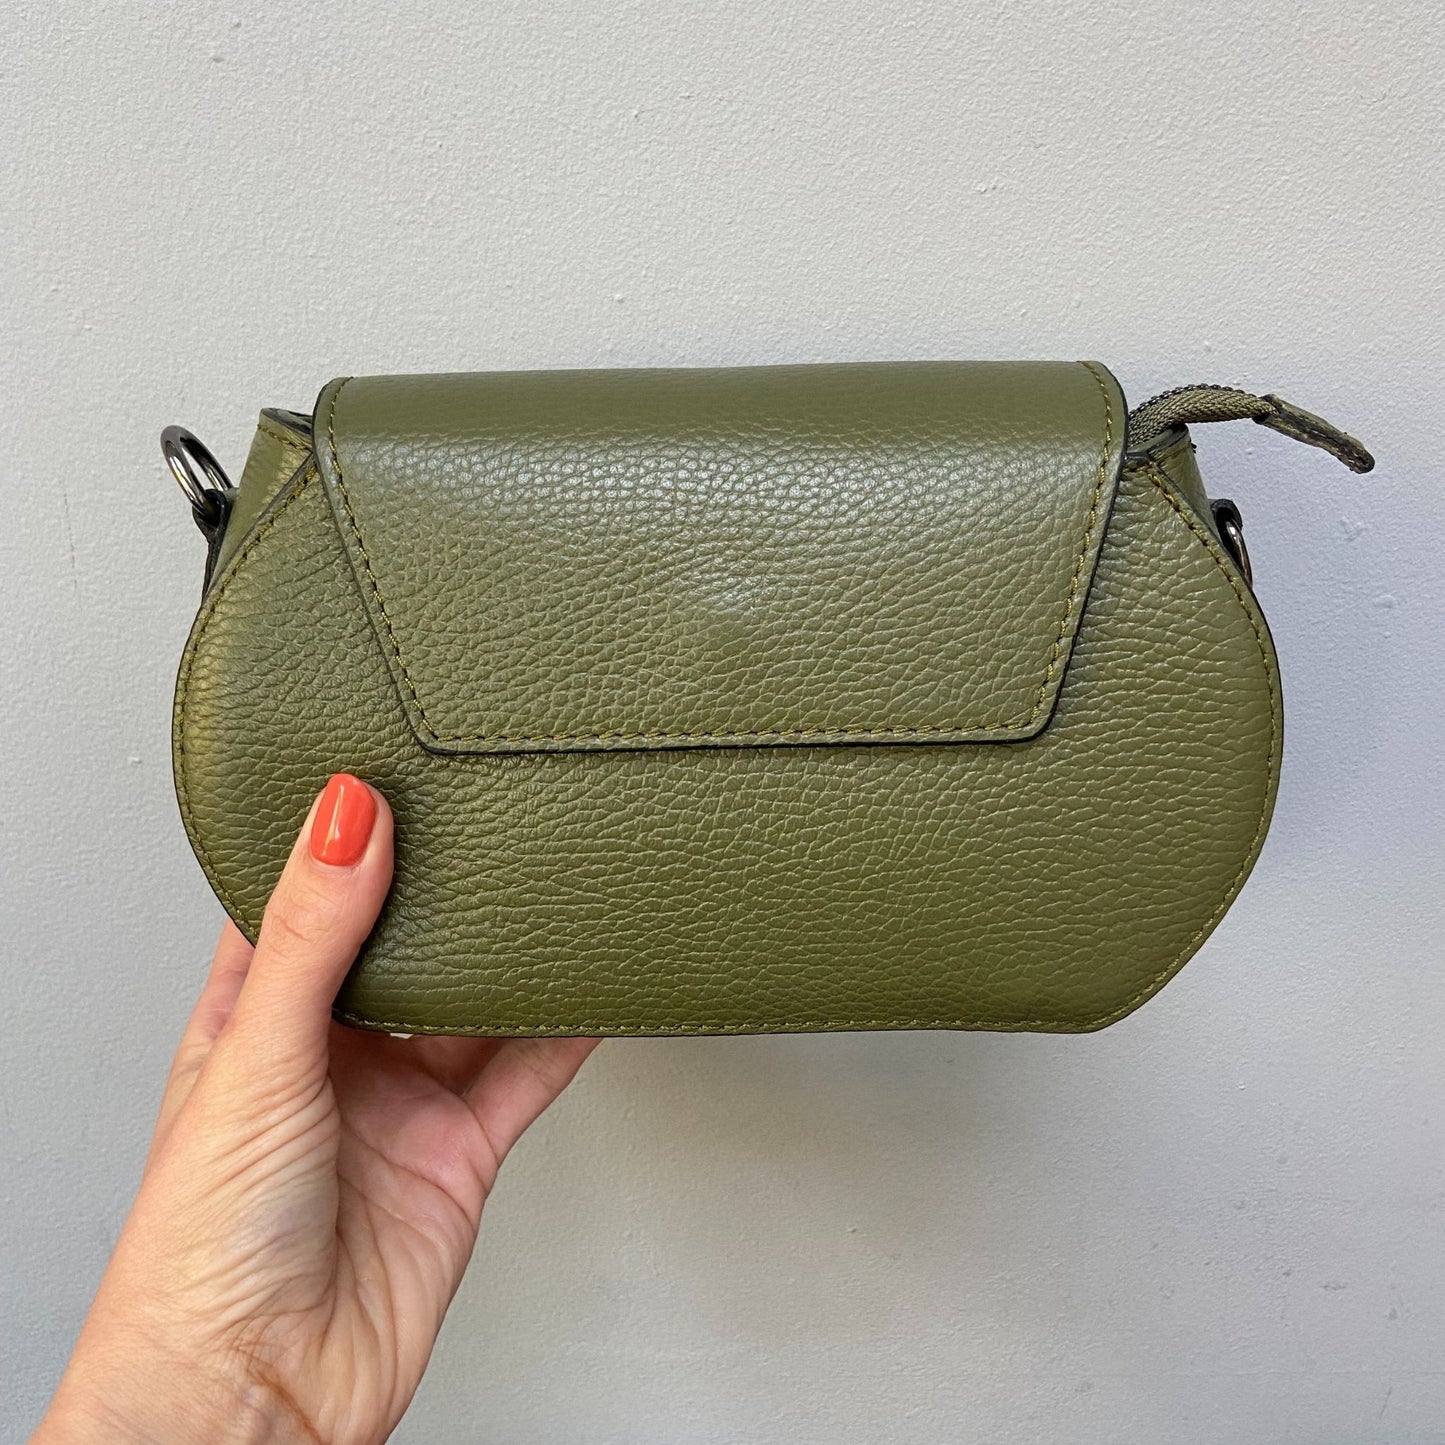 The Small Leather Handbag